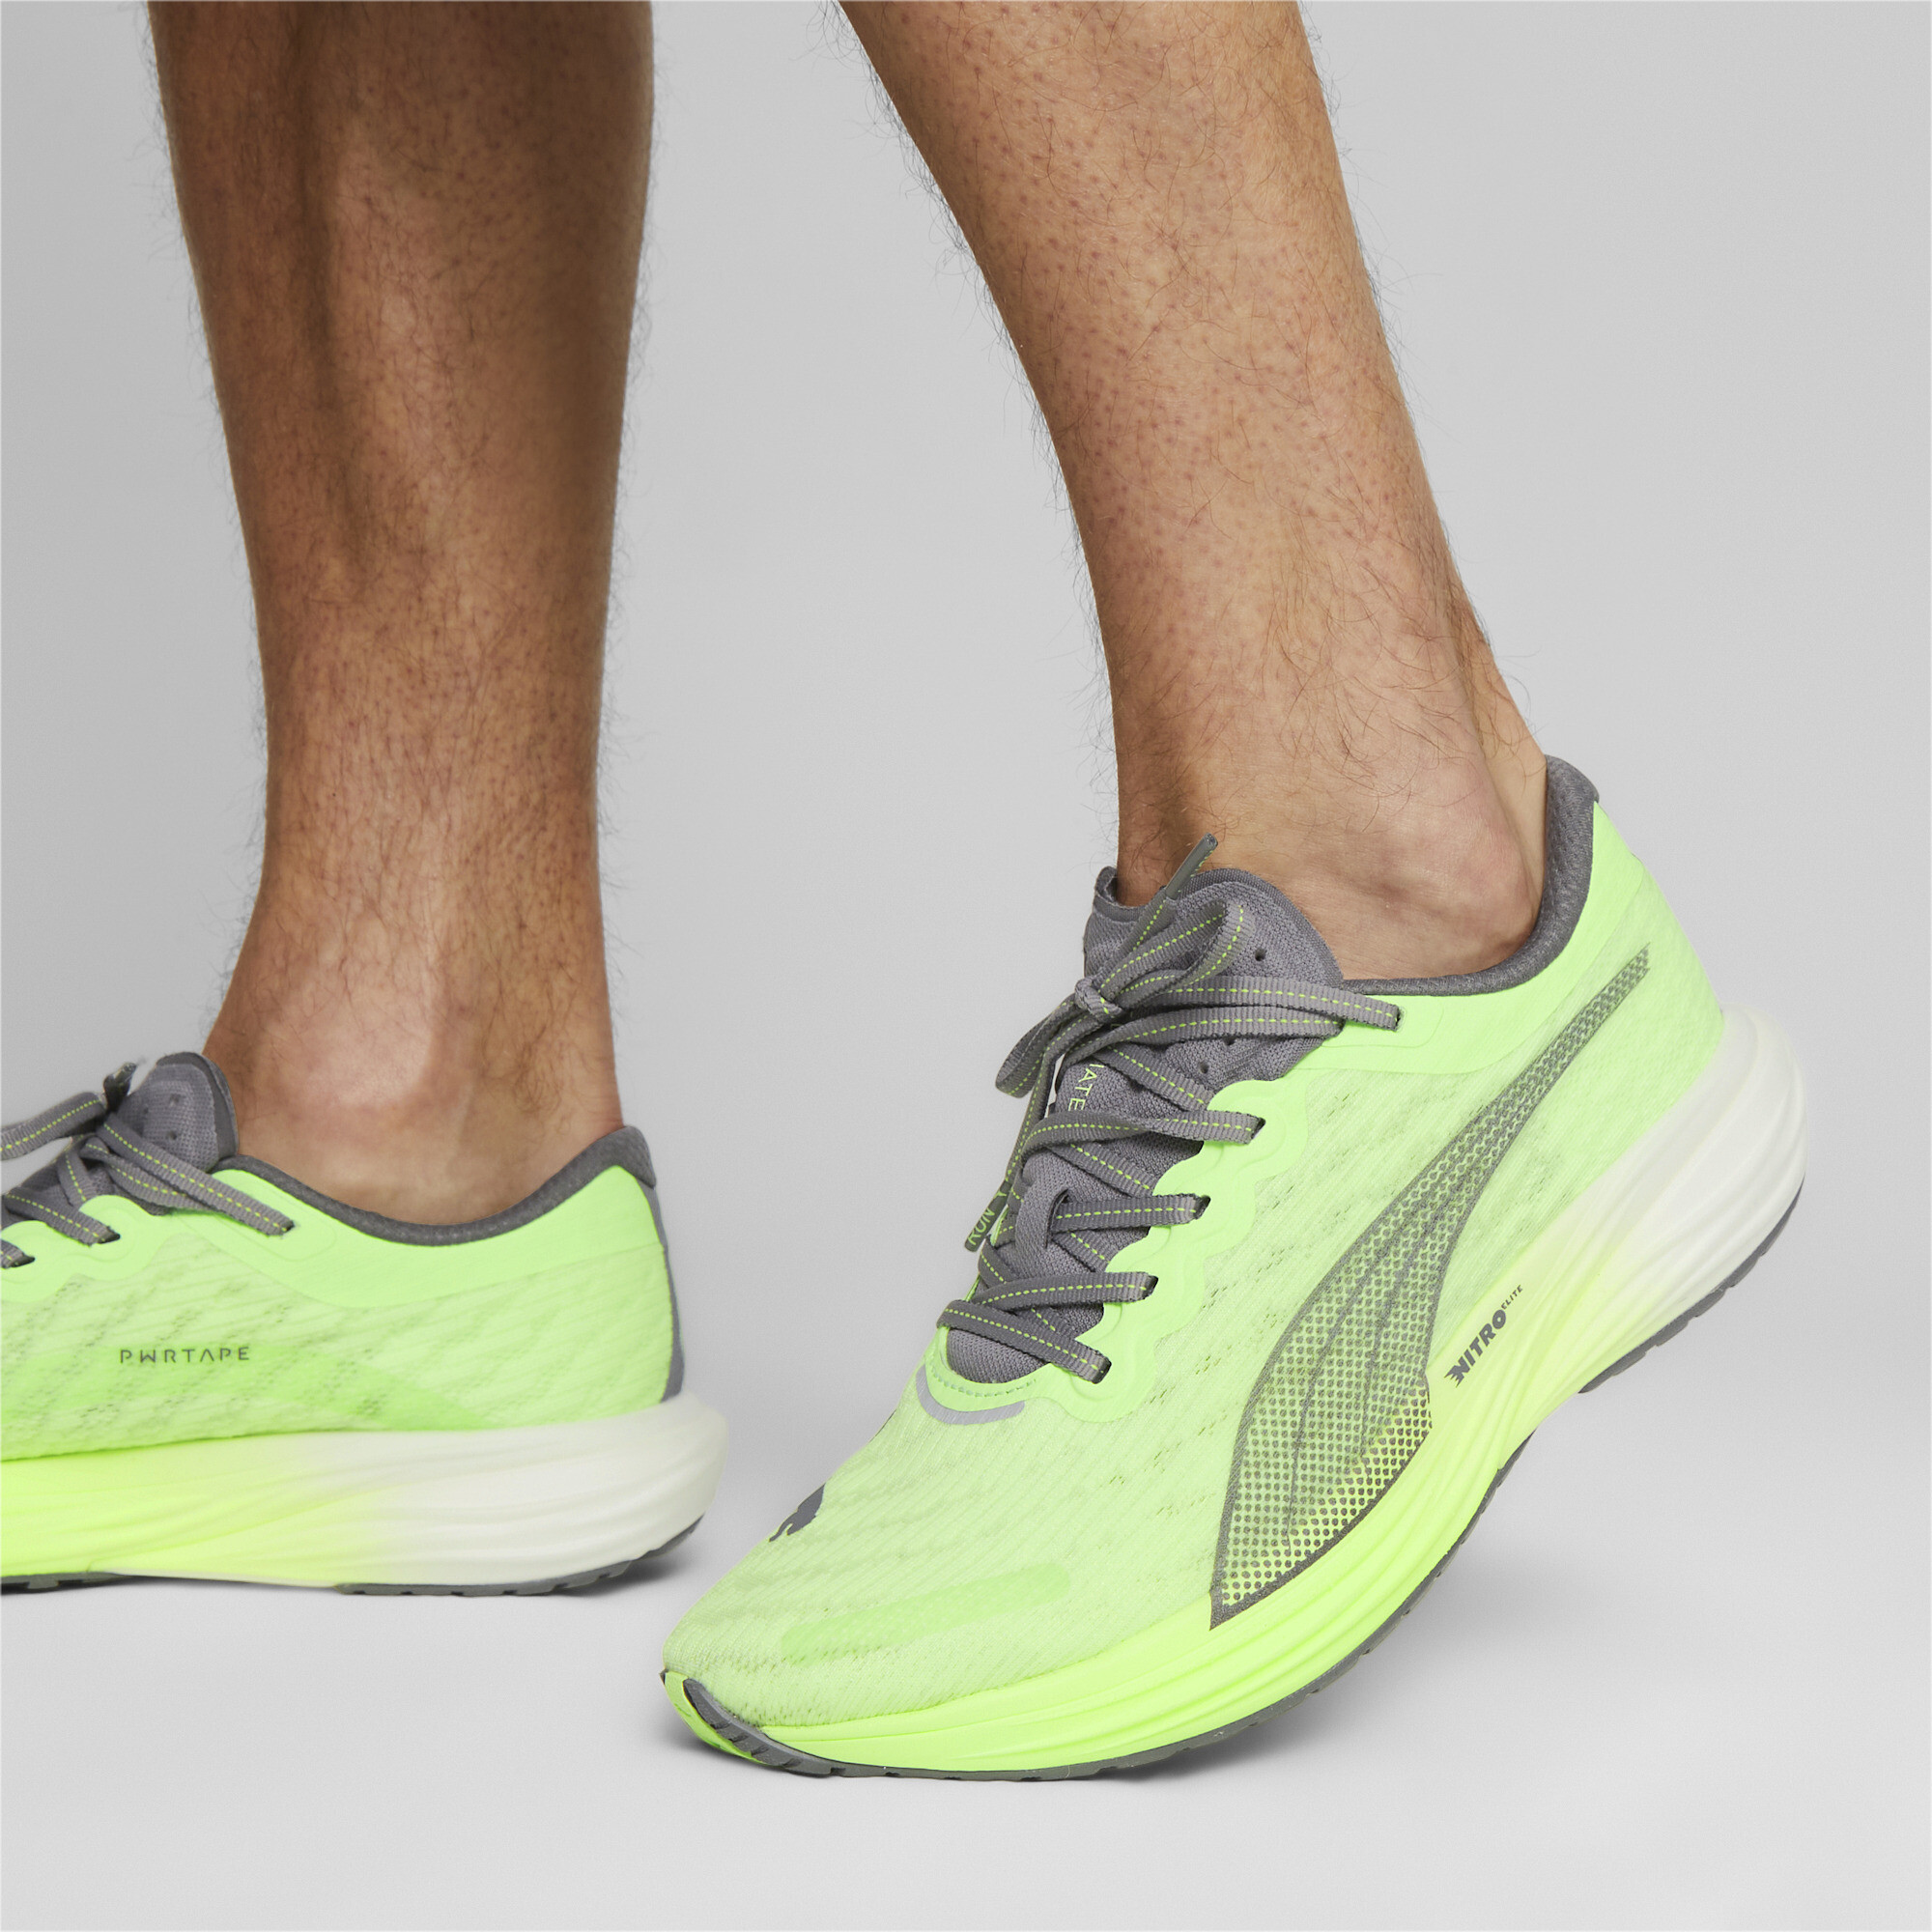 Men's PUMA Deviate NITROâ¢ 2 Running Shoes In Green, Size EU 42